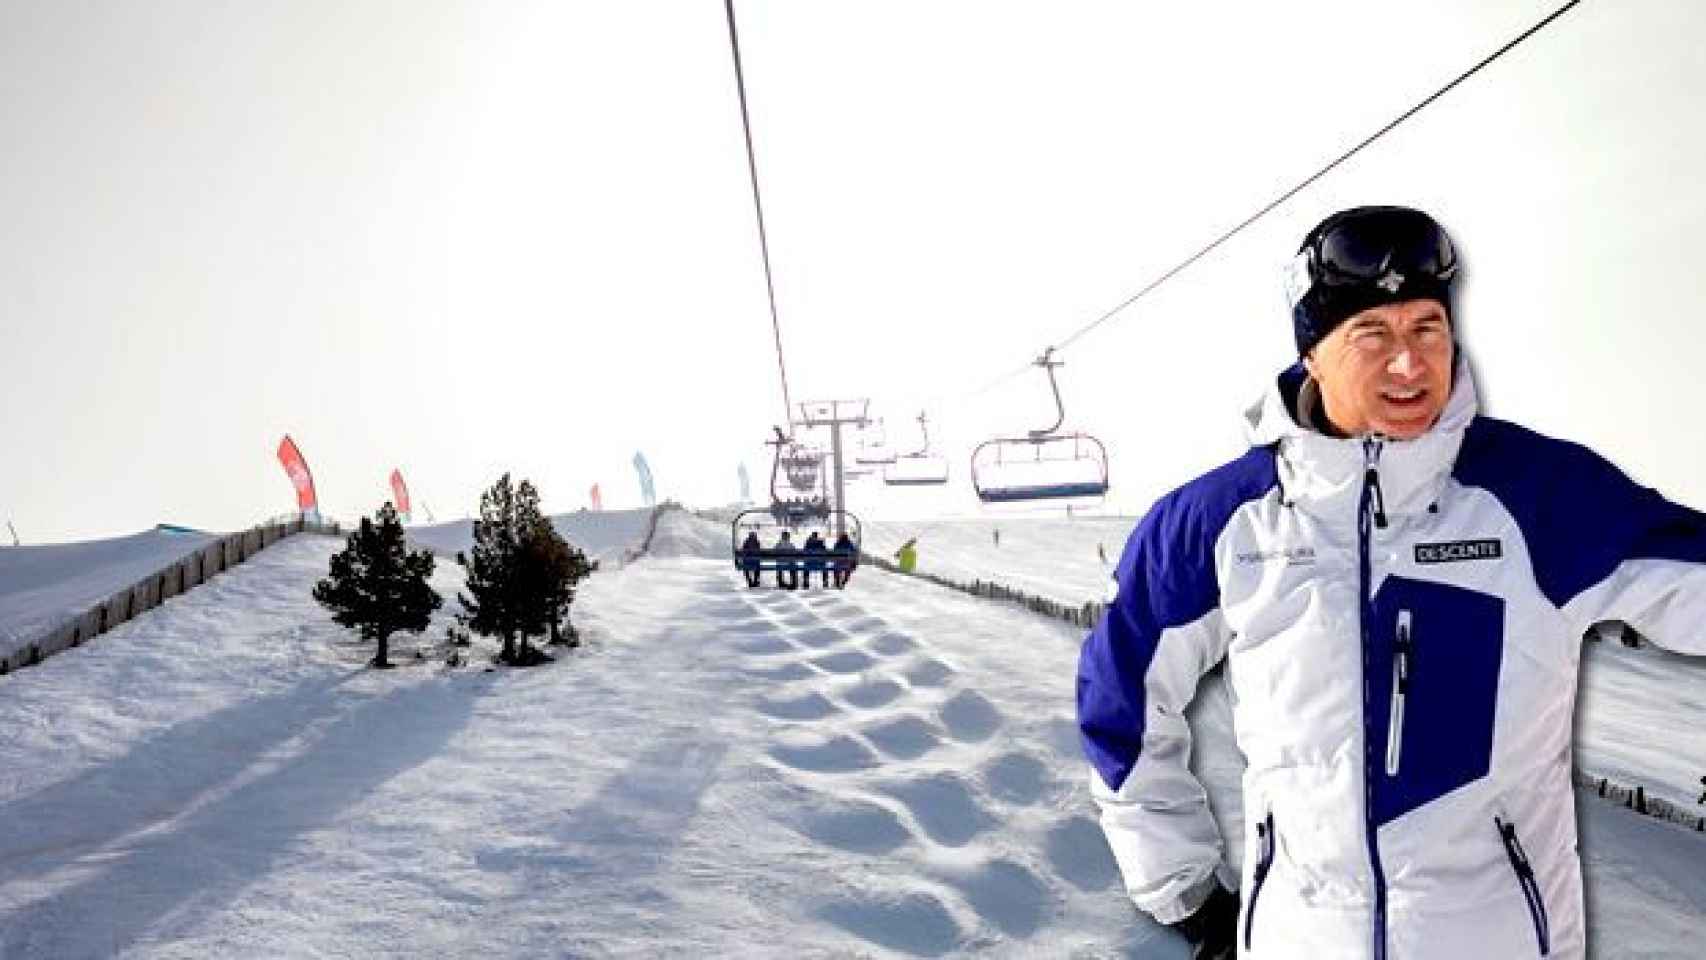 Joan Viladomat, presidente de Grandvalira, y una imagen promocional de la temporada 2016-2017 de la estación de esquí de Andorra / FOTOMONTAJE DE CG